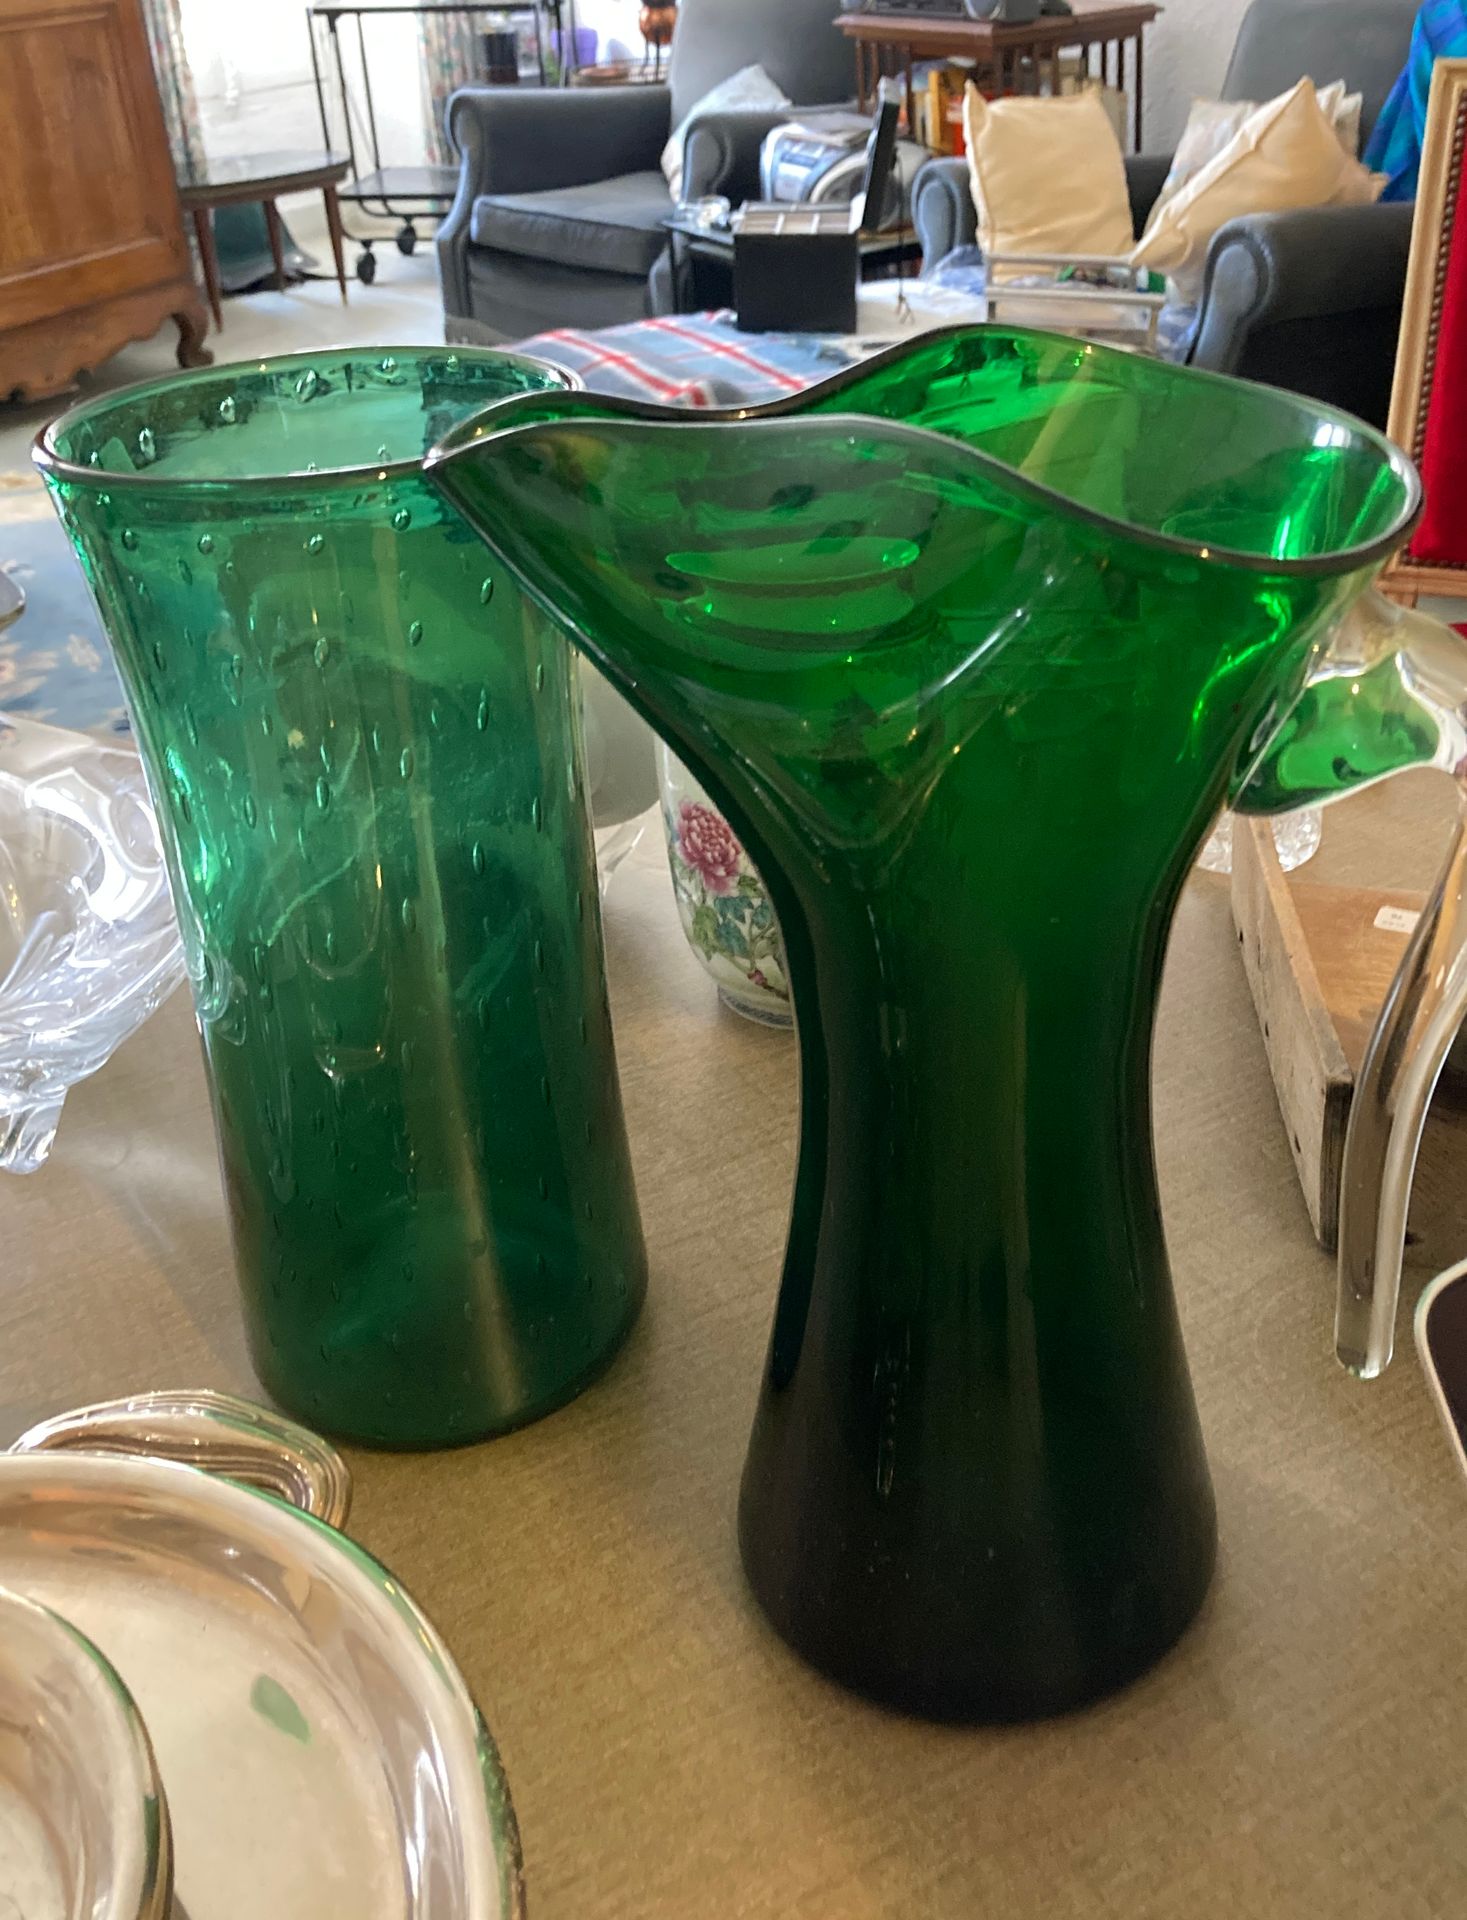 Null 一套绿色玻璃制品包括一个水壶，插座是热装的，还有一个管状花瓶。可能是意大利人的作品。高度：31厘米。